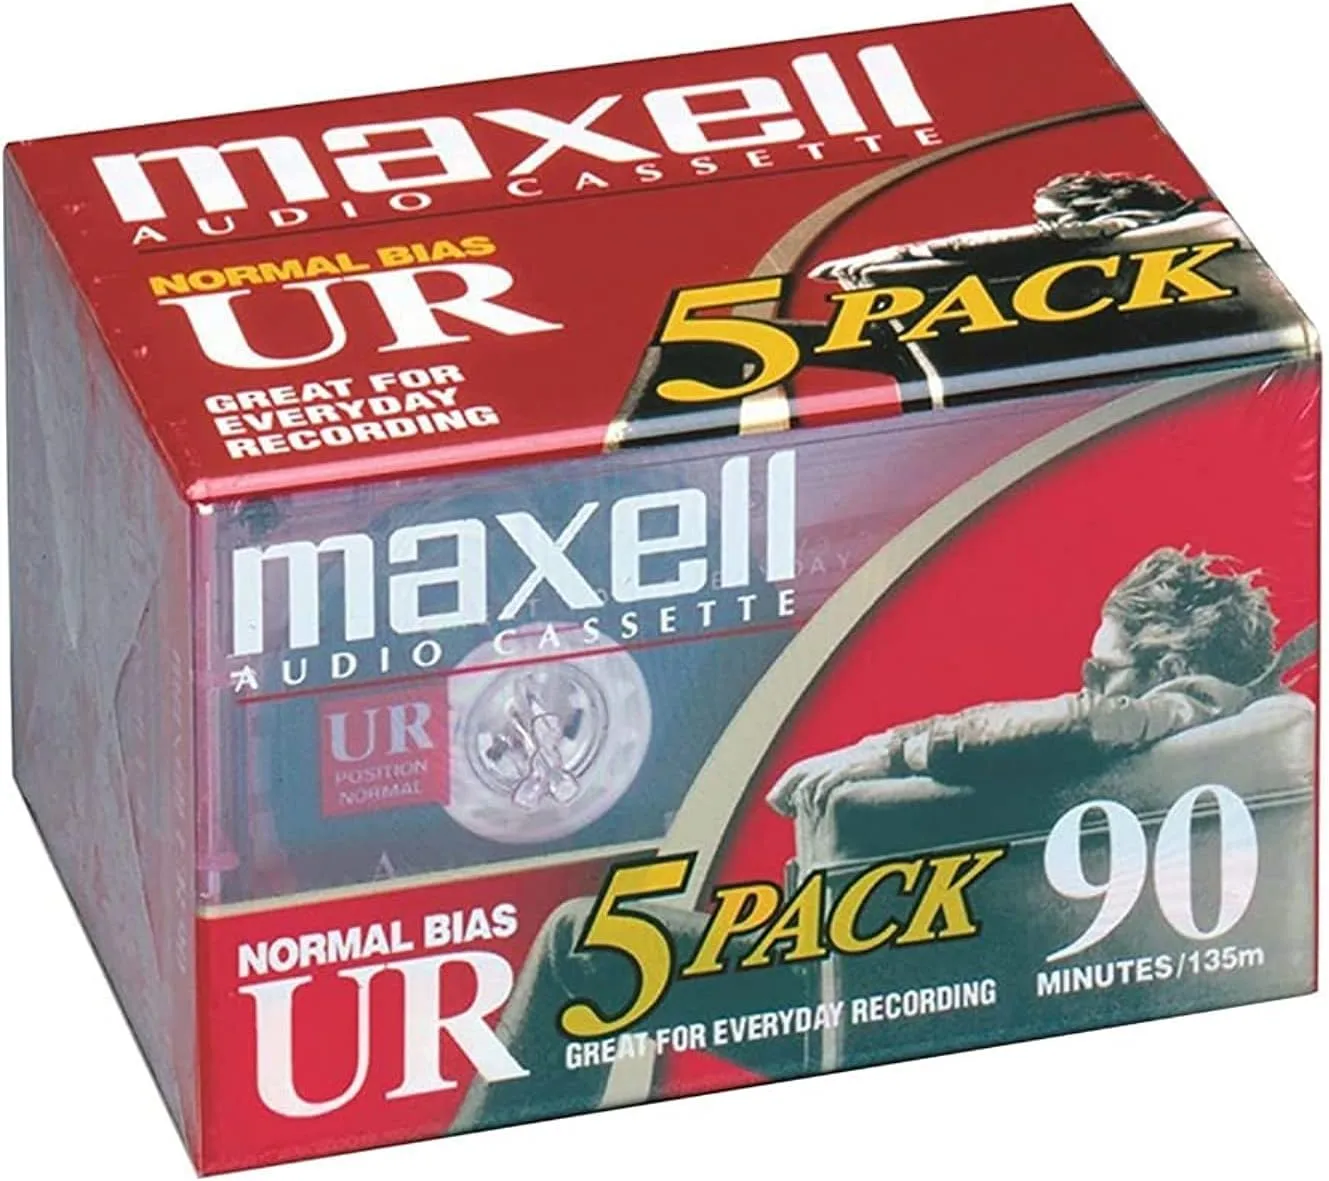 Maxell UR Normal Bias 90 Minuten / 135m Audio Recording Kassette / 5er Pack